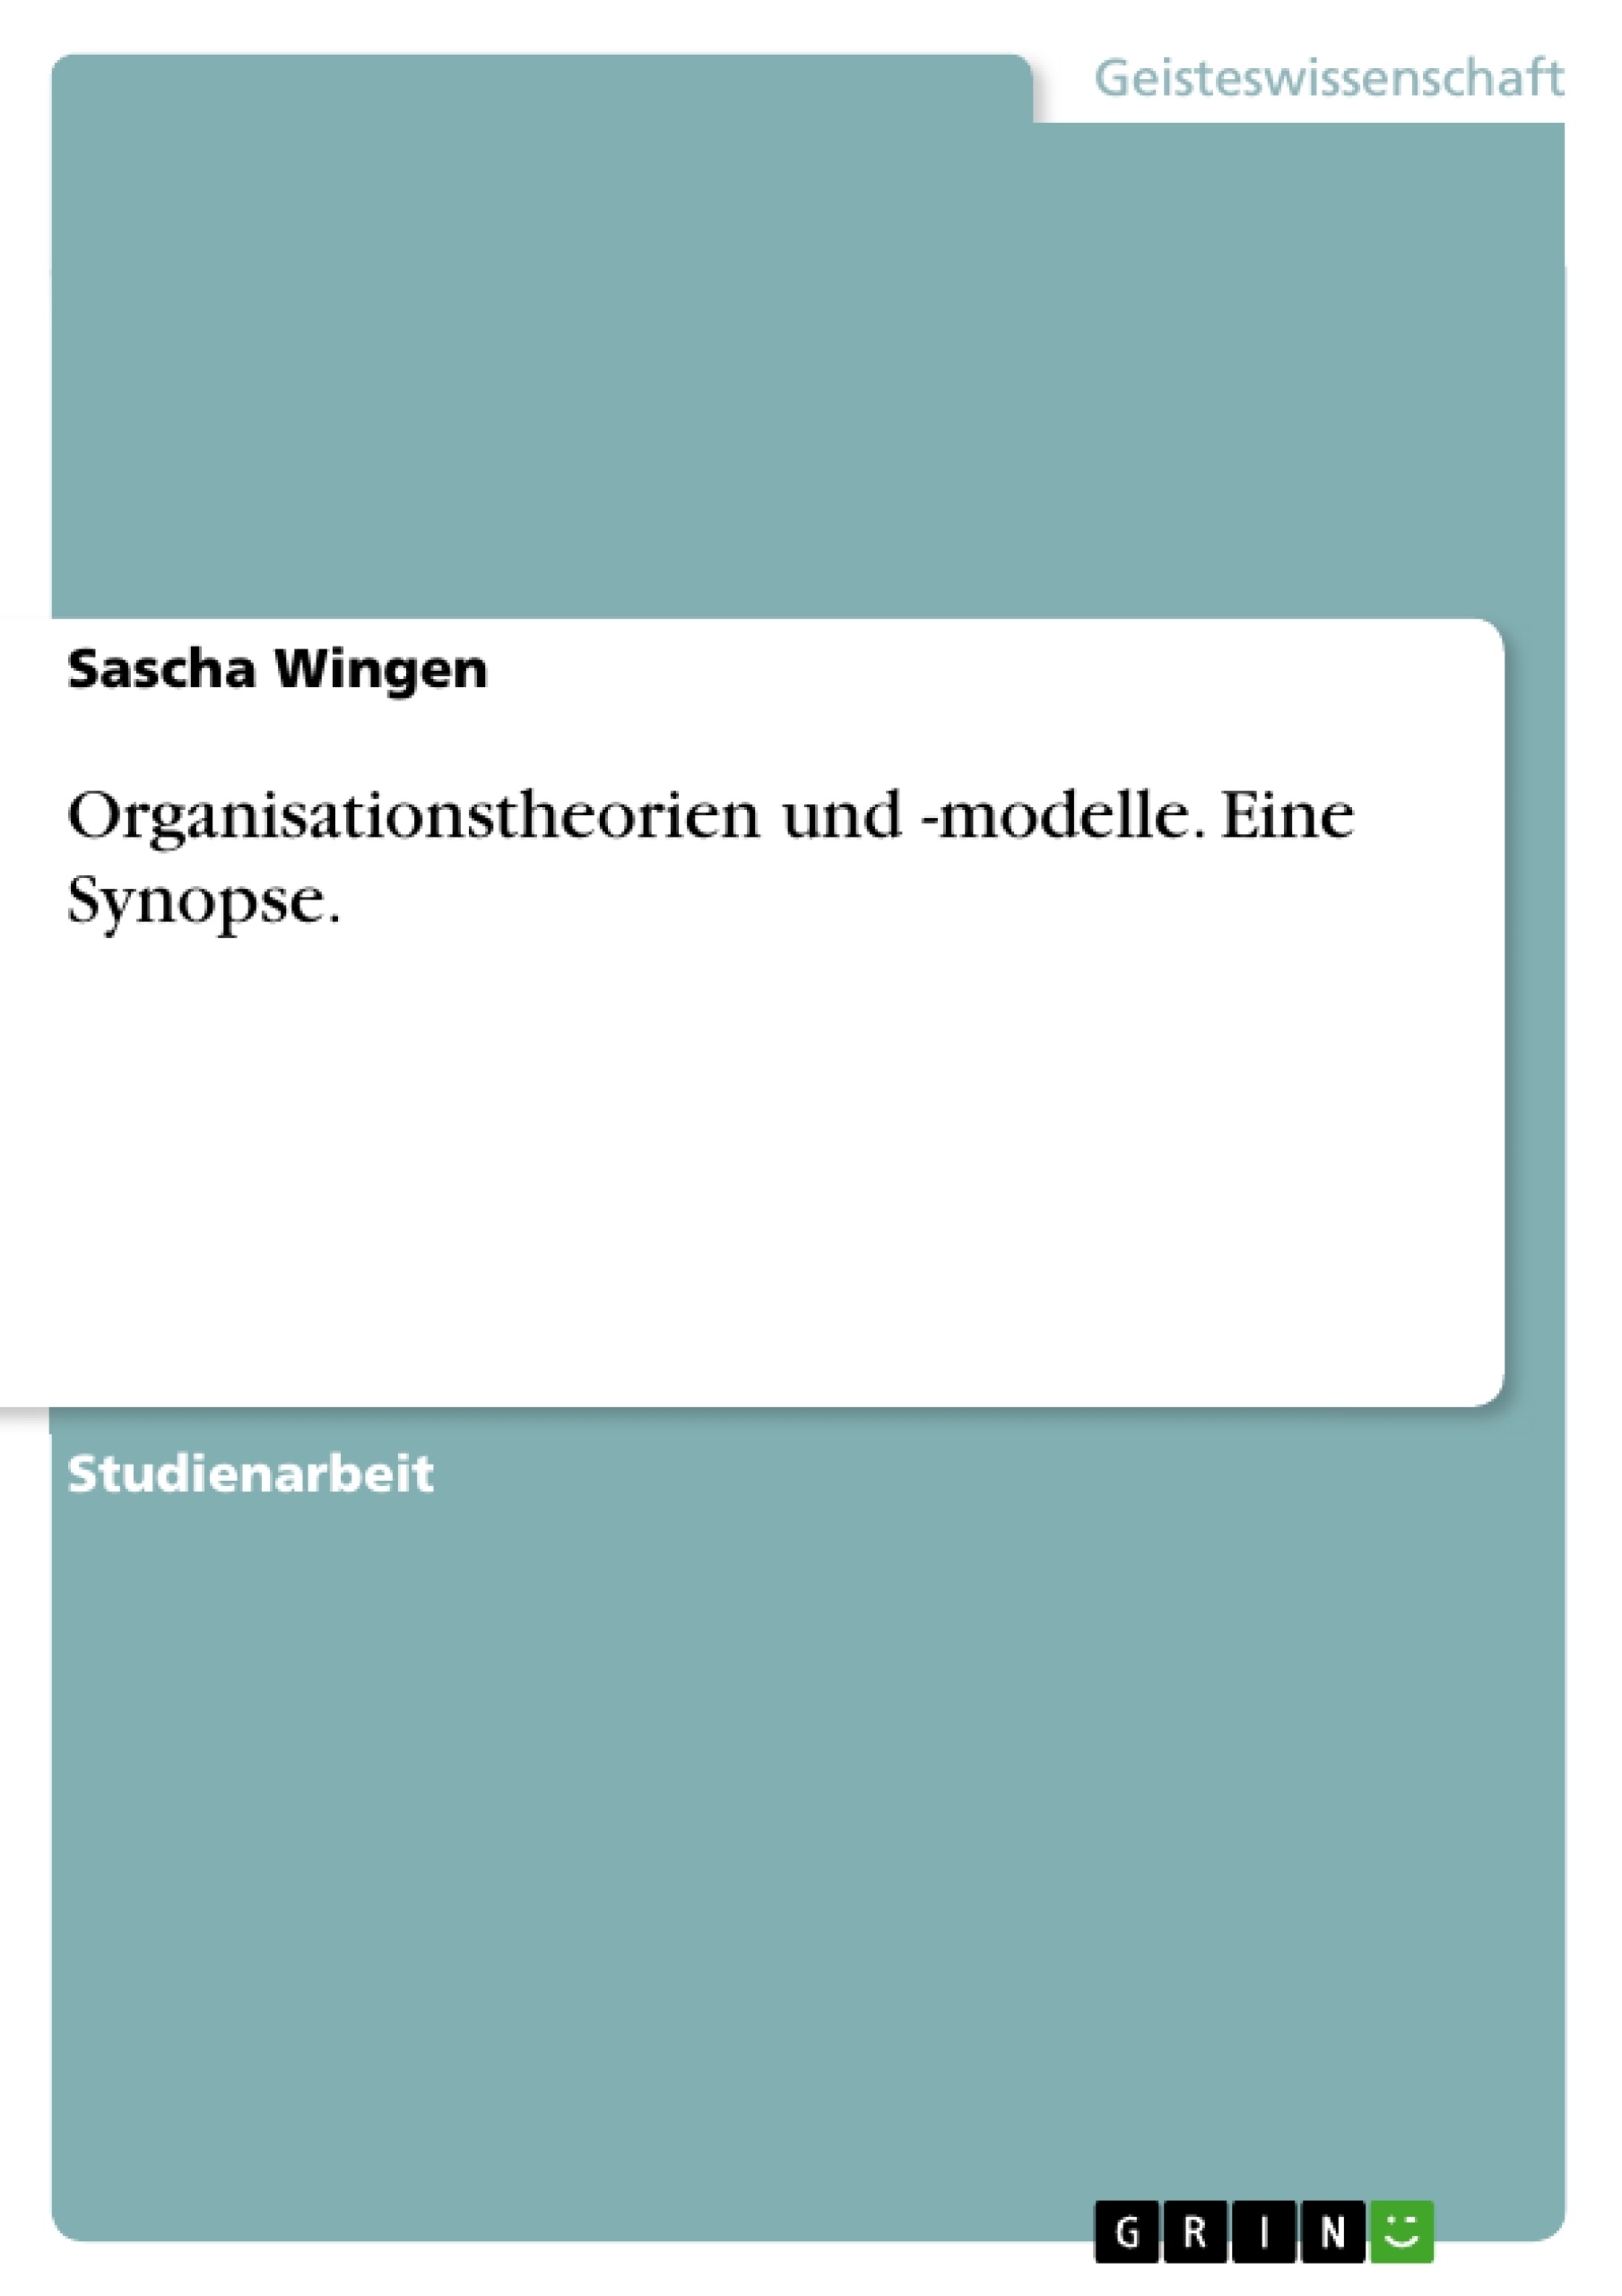 Título: Organisationstheorien und -modelle. Eine Synopse.